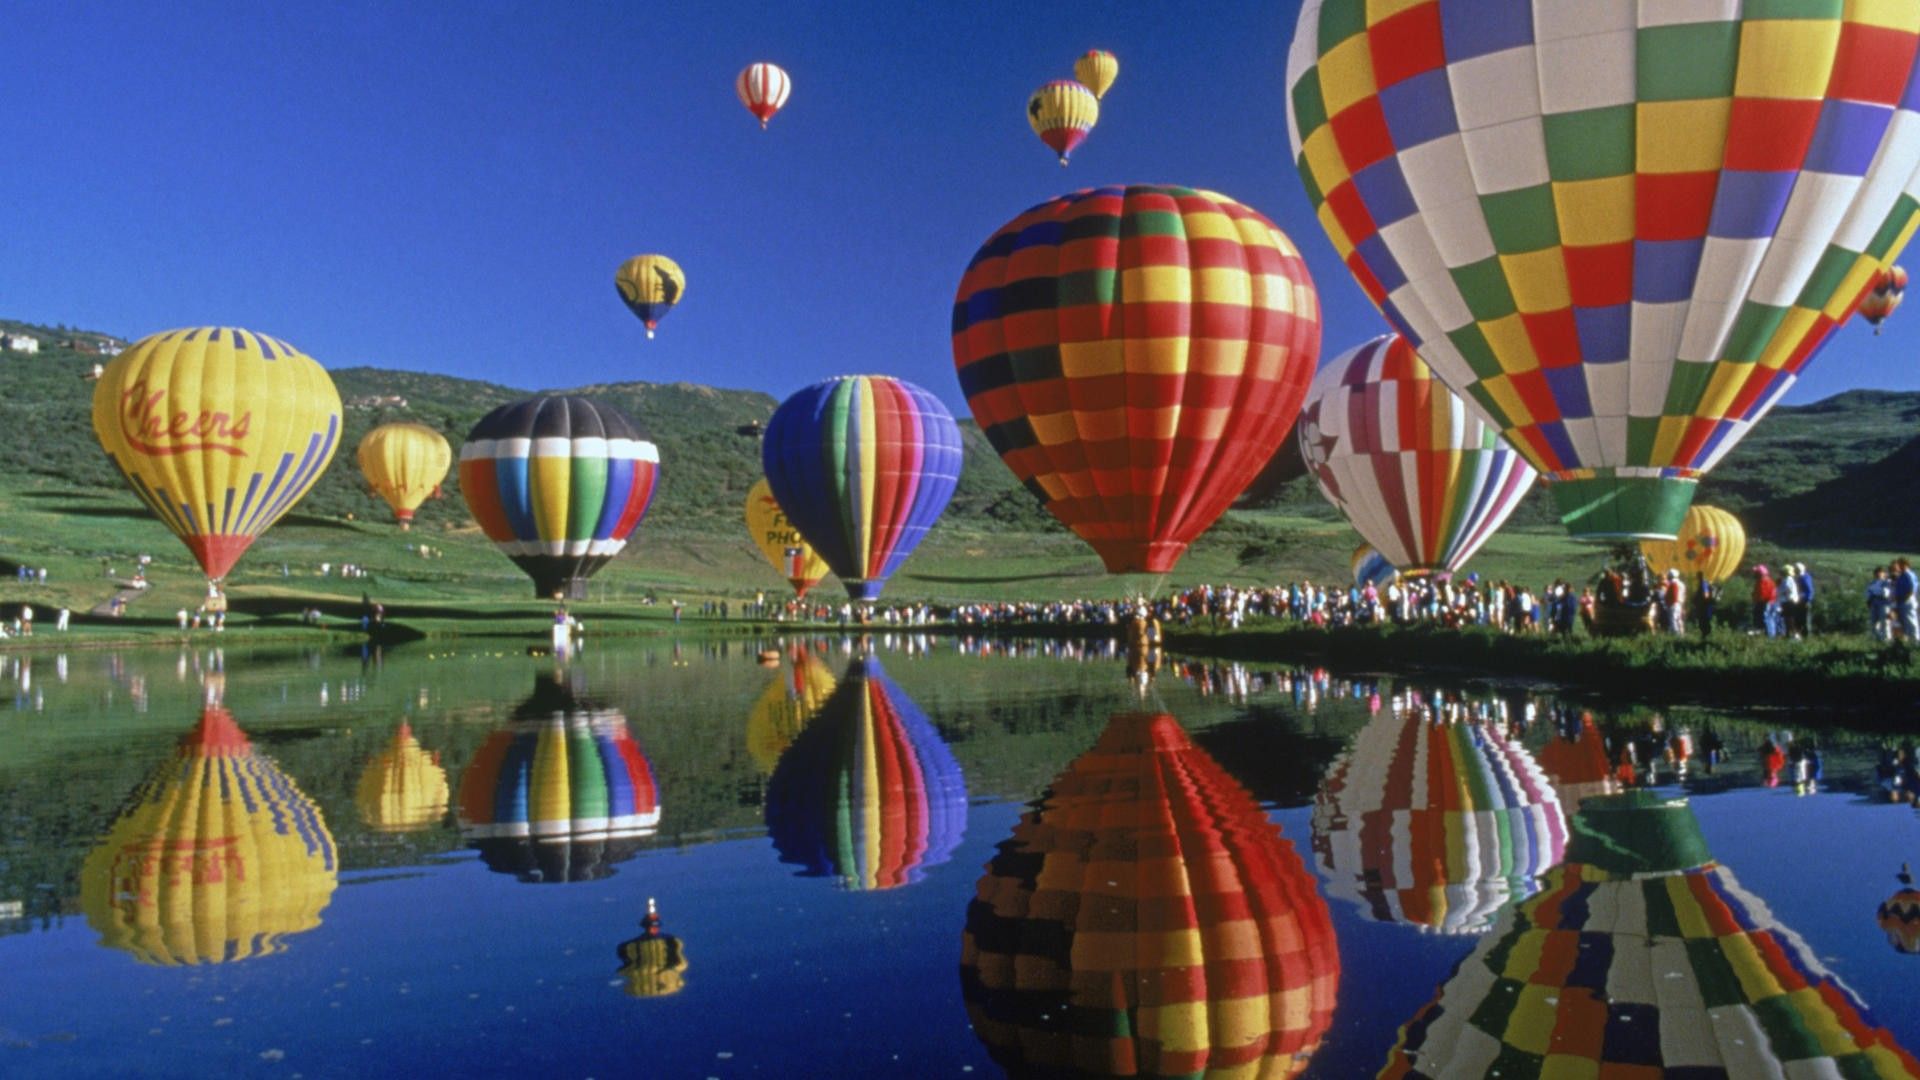 Hot Air Balloon – HD Wallpaper, Wallpaper Pics - The Best Wallpapers